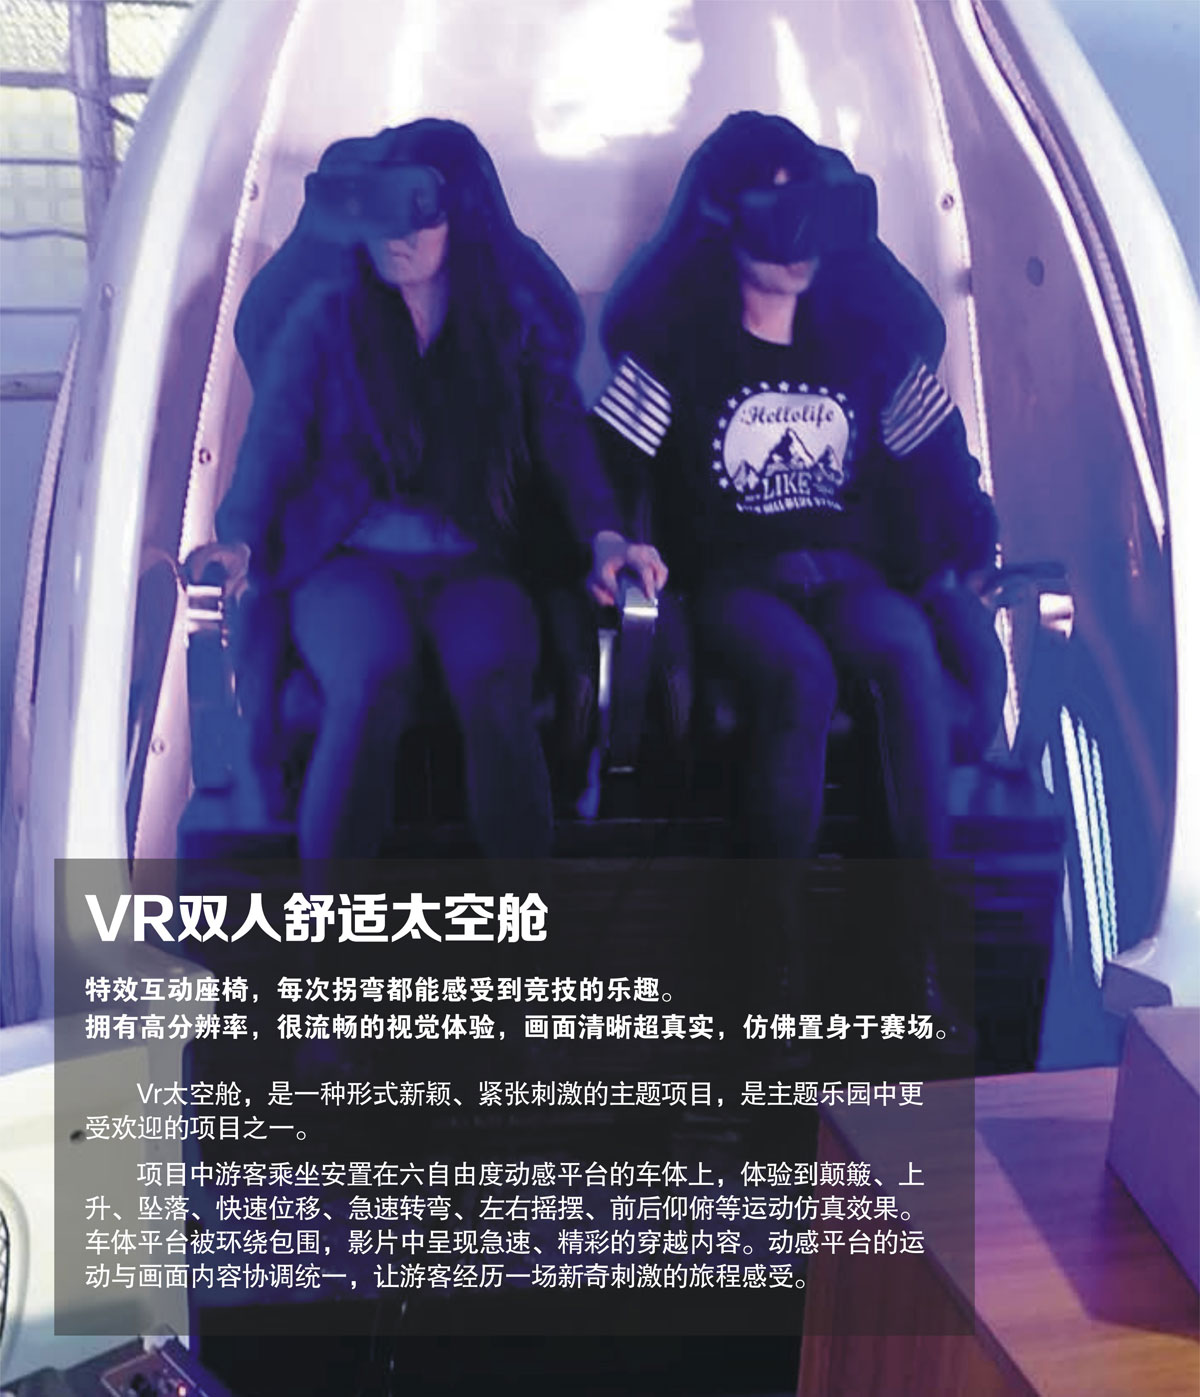 环幕影院VR双人舒适太空舱.jpg